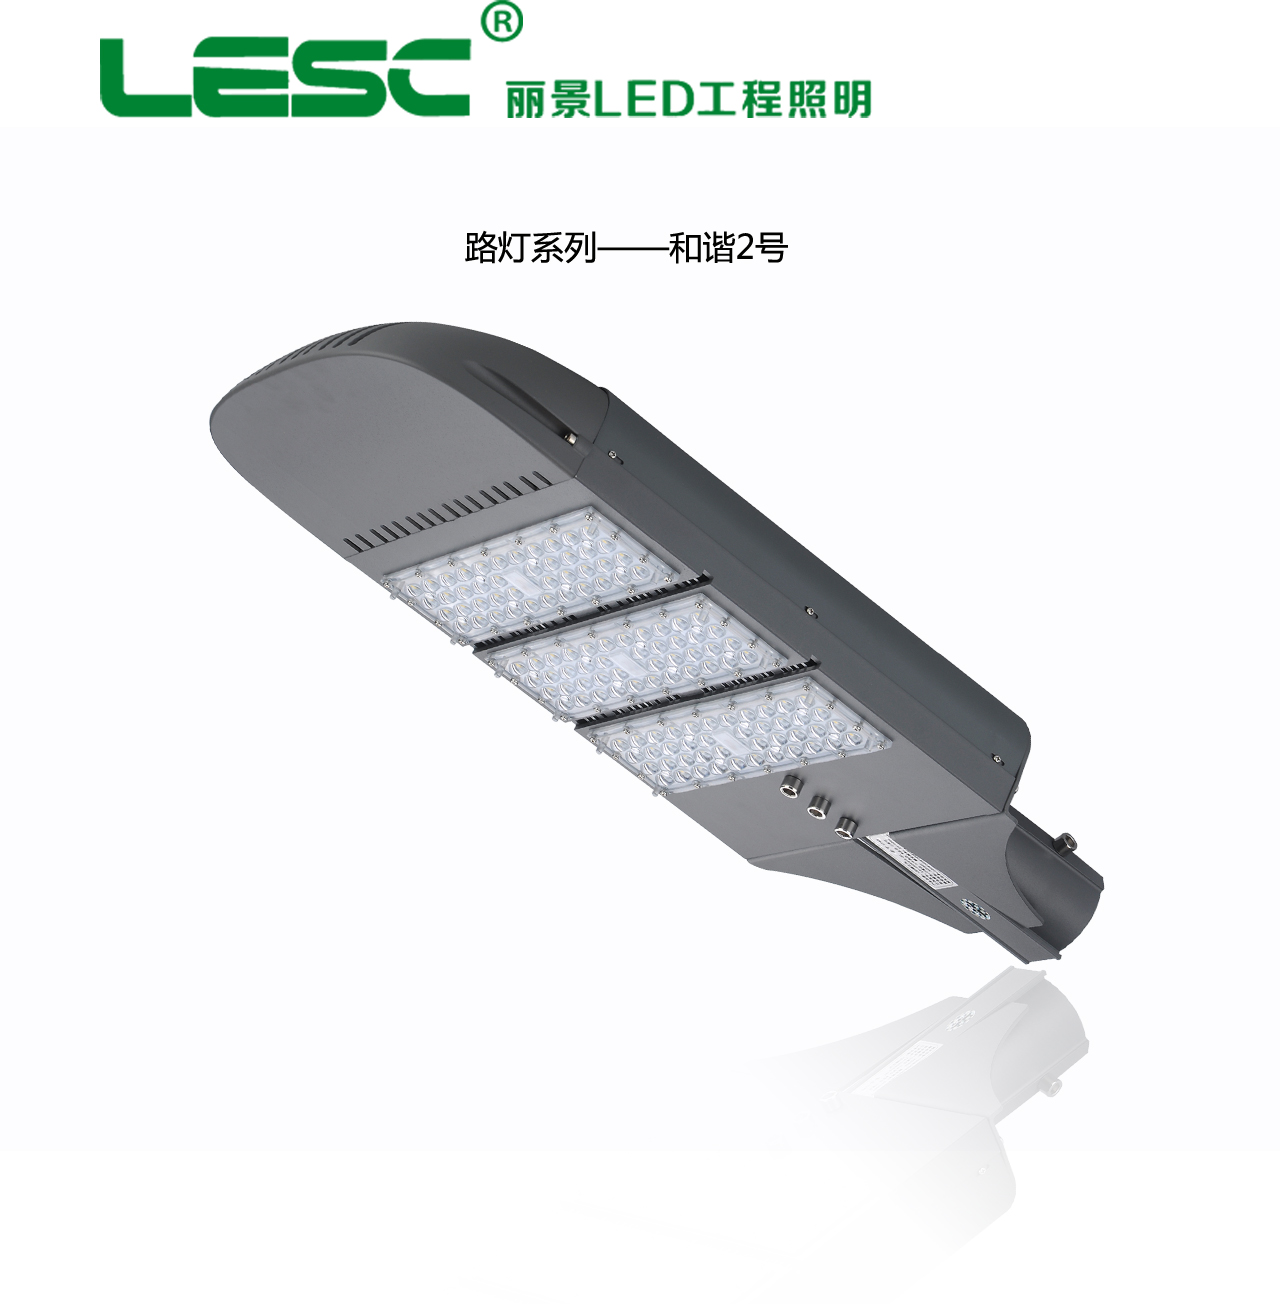 厂家供应大功率LED路灯和谐二号路灯灯头热销新型节能环保路灯系列图片